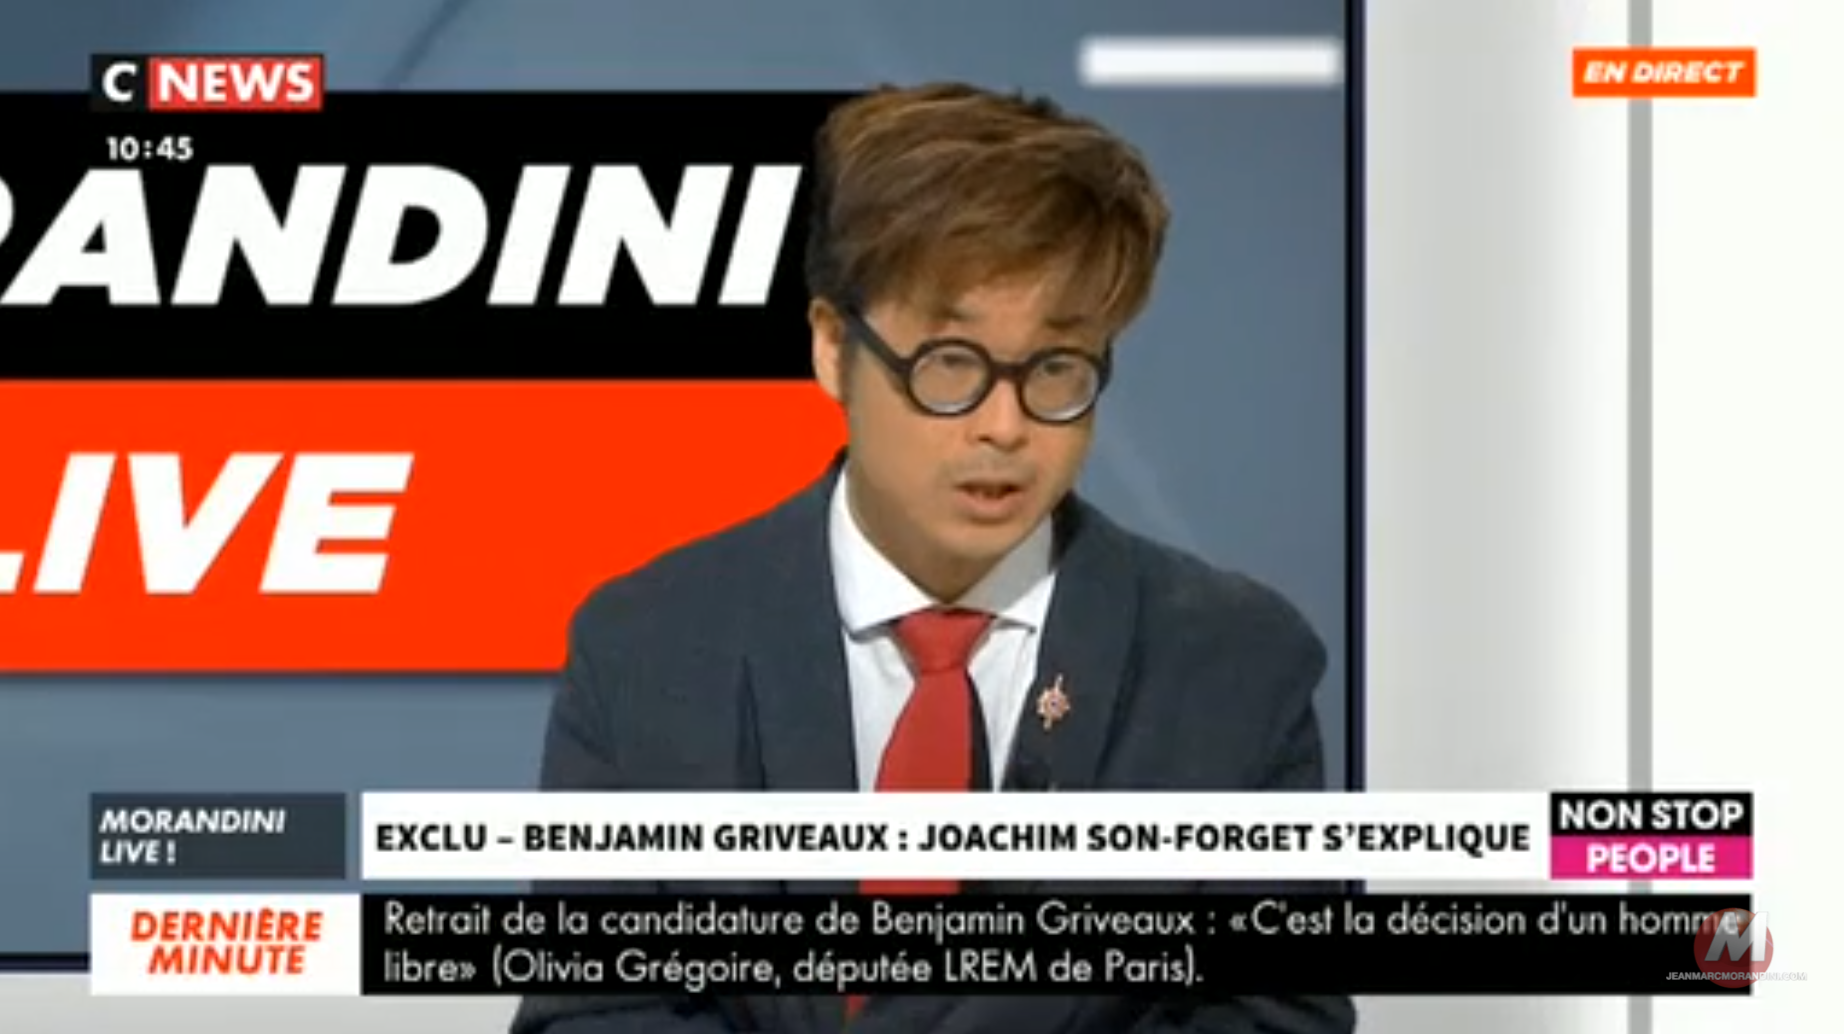 Griveaux : Le député Joachim Son-Forget, qui a relayé le lien vidéo sur Twitter, dit craindre d’autres vidéos impliquant d’autres hommes politiques… (VIDÉO)